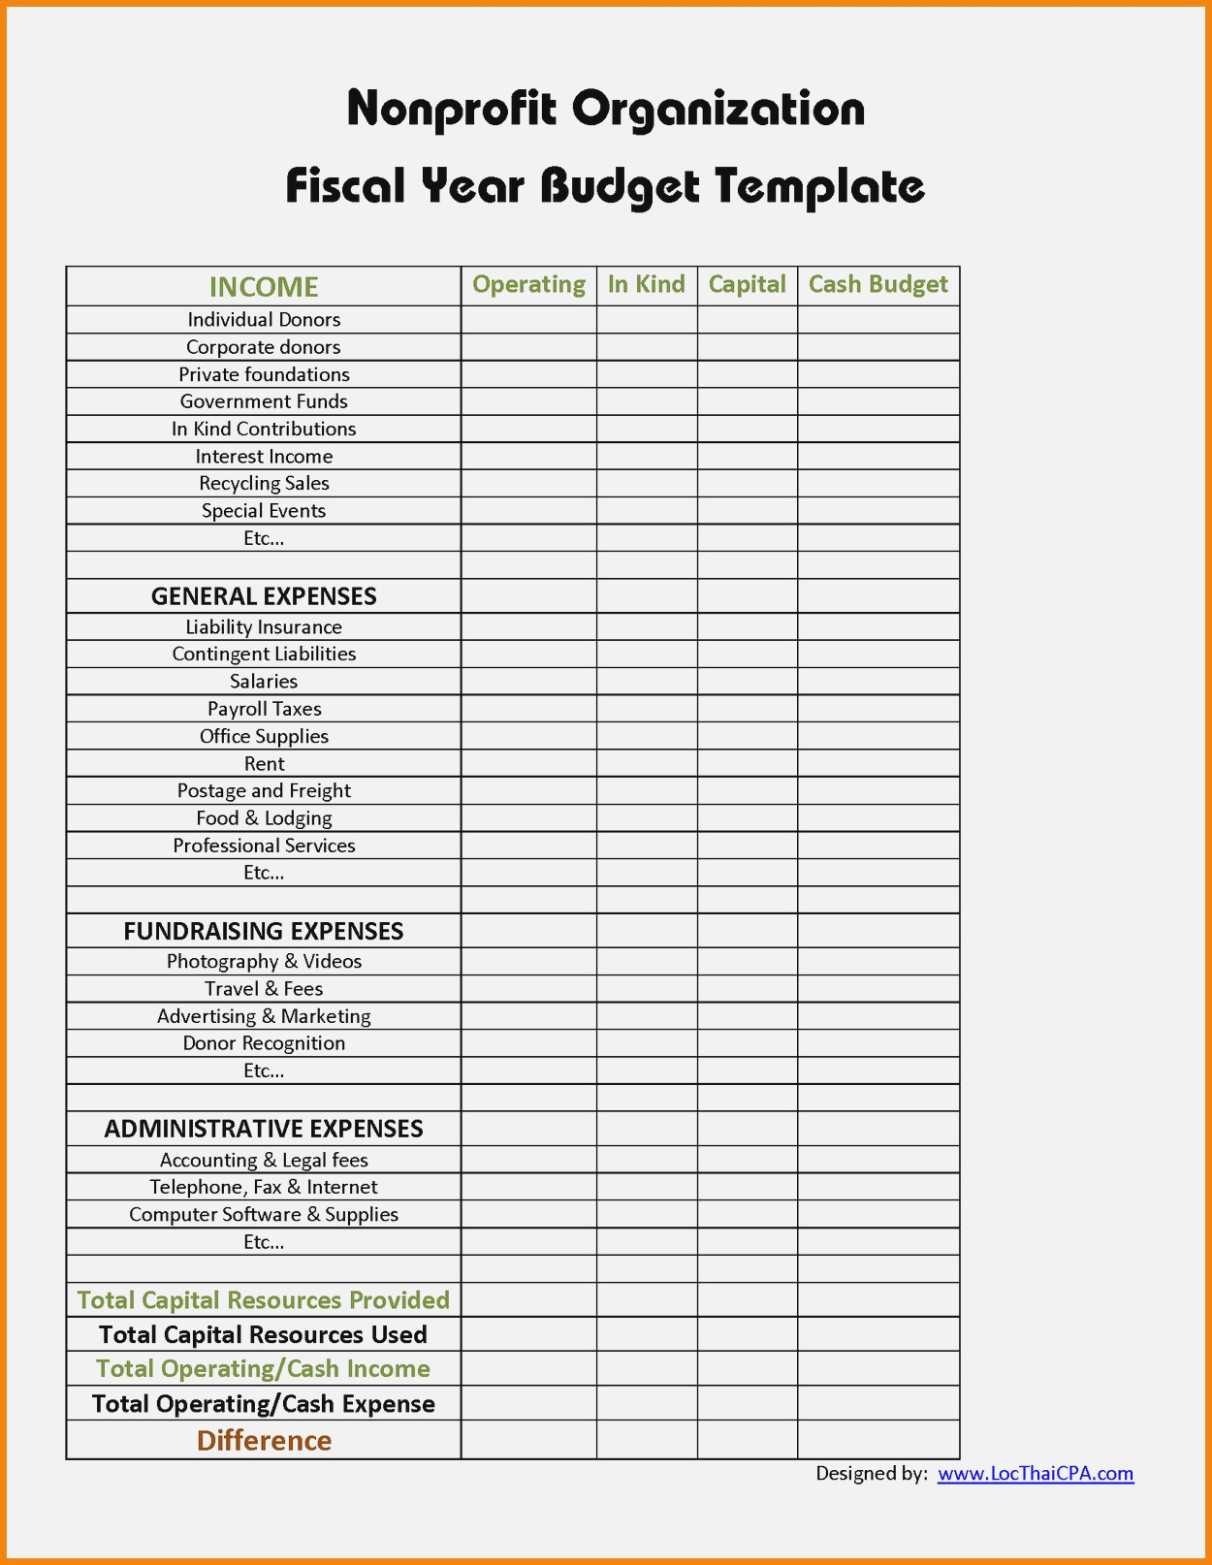 10 Treasurers Report Template | Resume Samples Intended For Treasurer Report Template